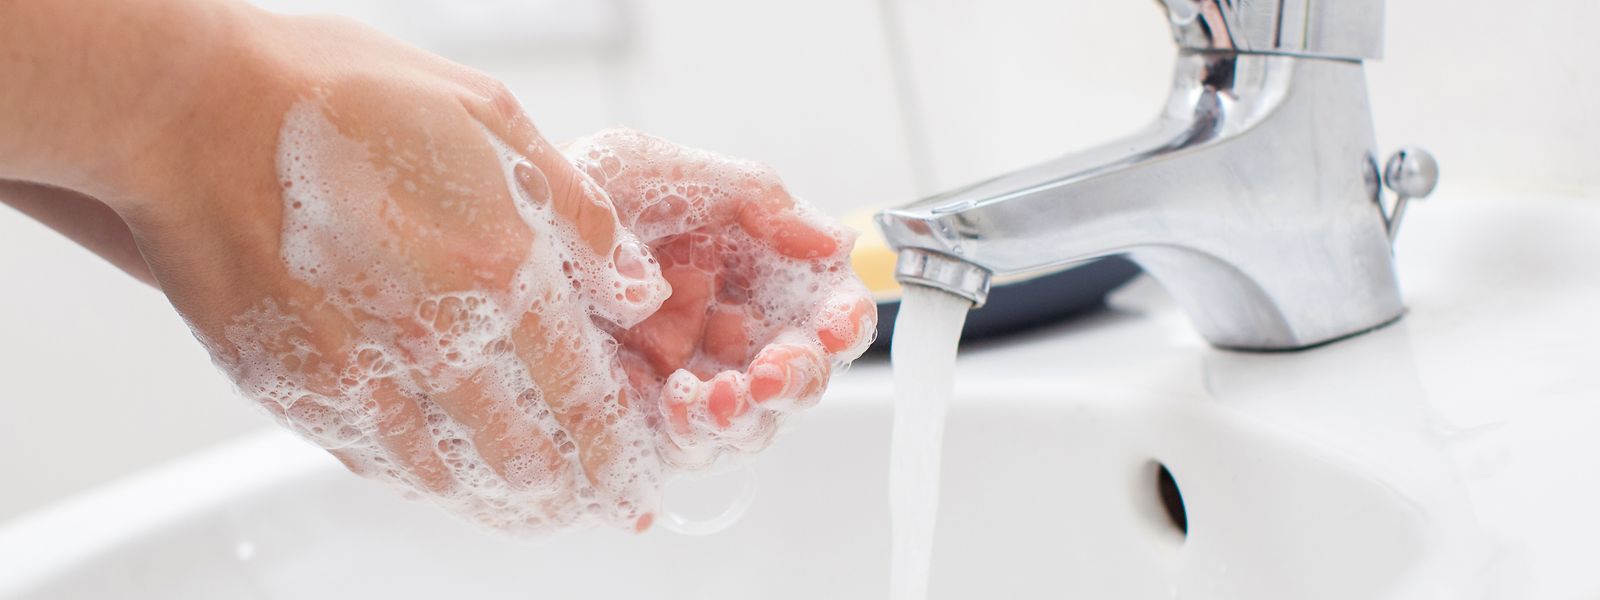 Händewaschen mit Seife hilft, die Gesundheit zu schützen - vor einer Grippe ebenso wie vor dem Sars-CoV-2-Virus. 